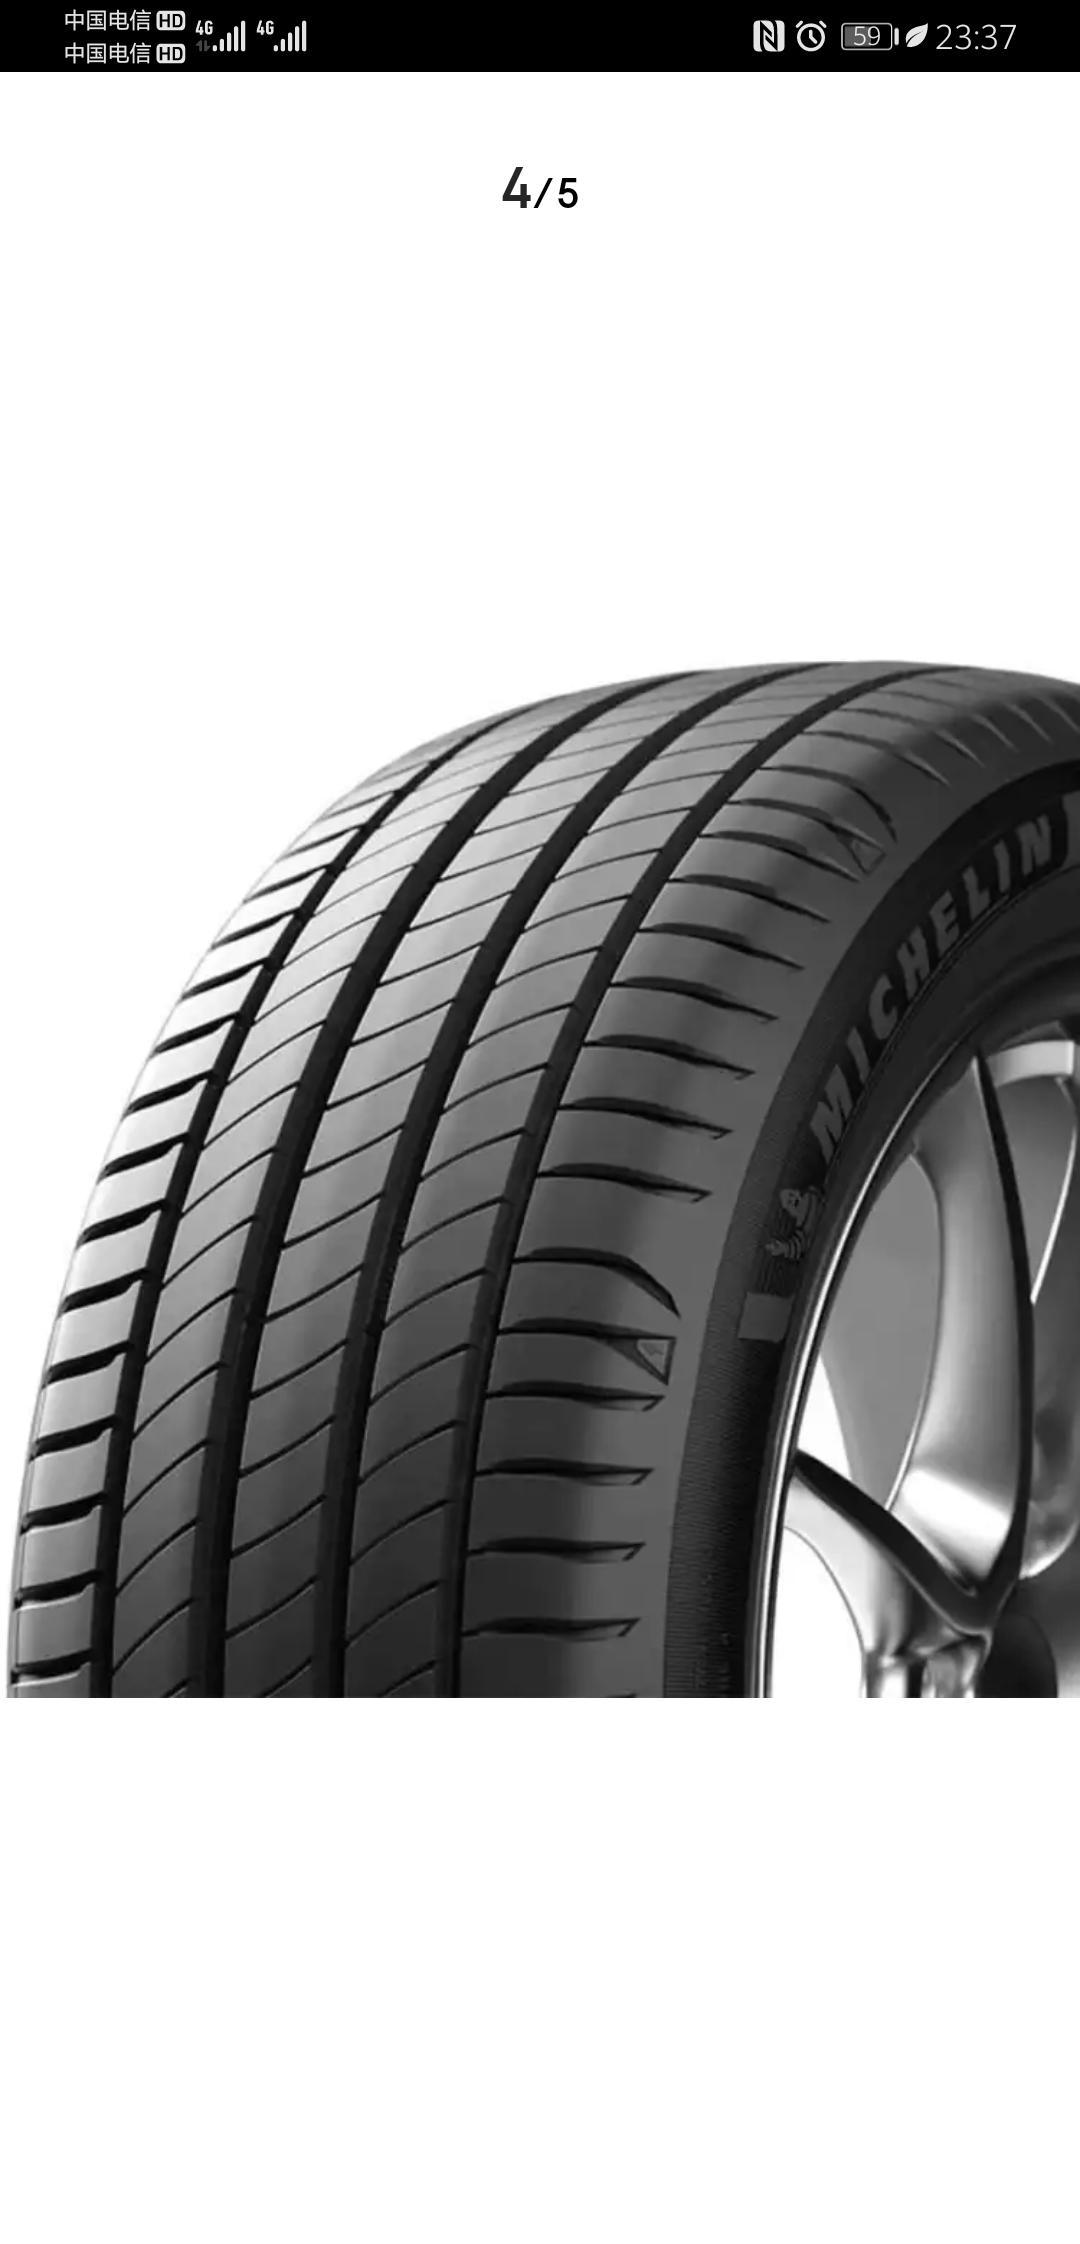 德国马牌(Continental) 轮胎/汽车轮胎 225/45R17 94W MC6 与米其林轮胎Michelin汽车